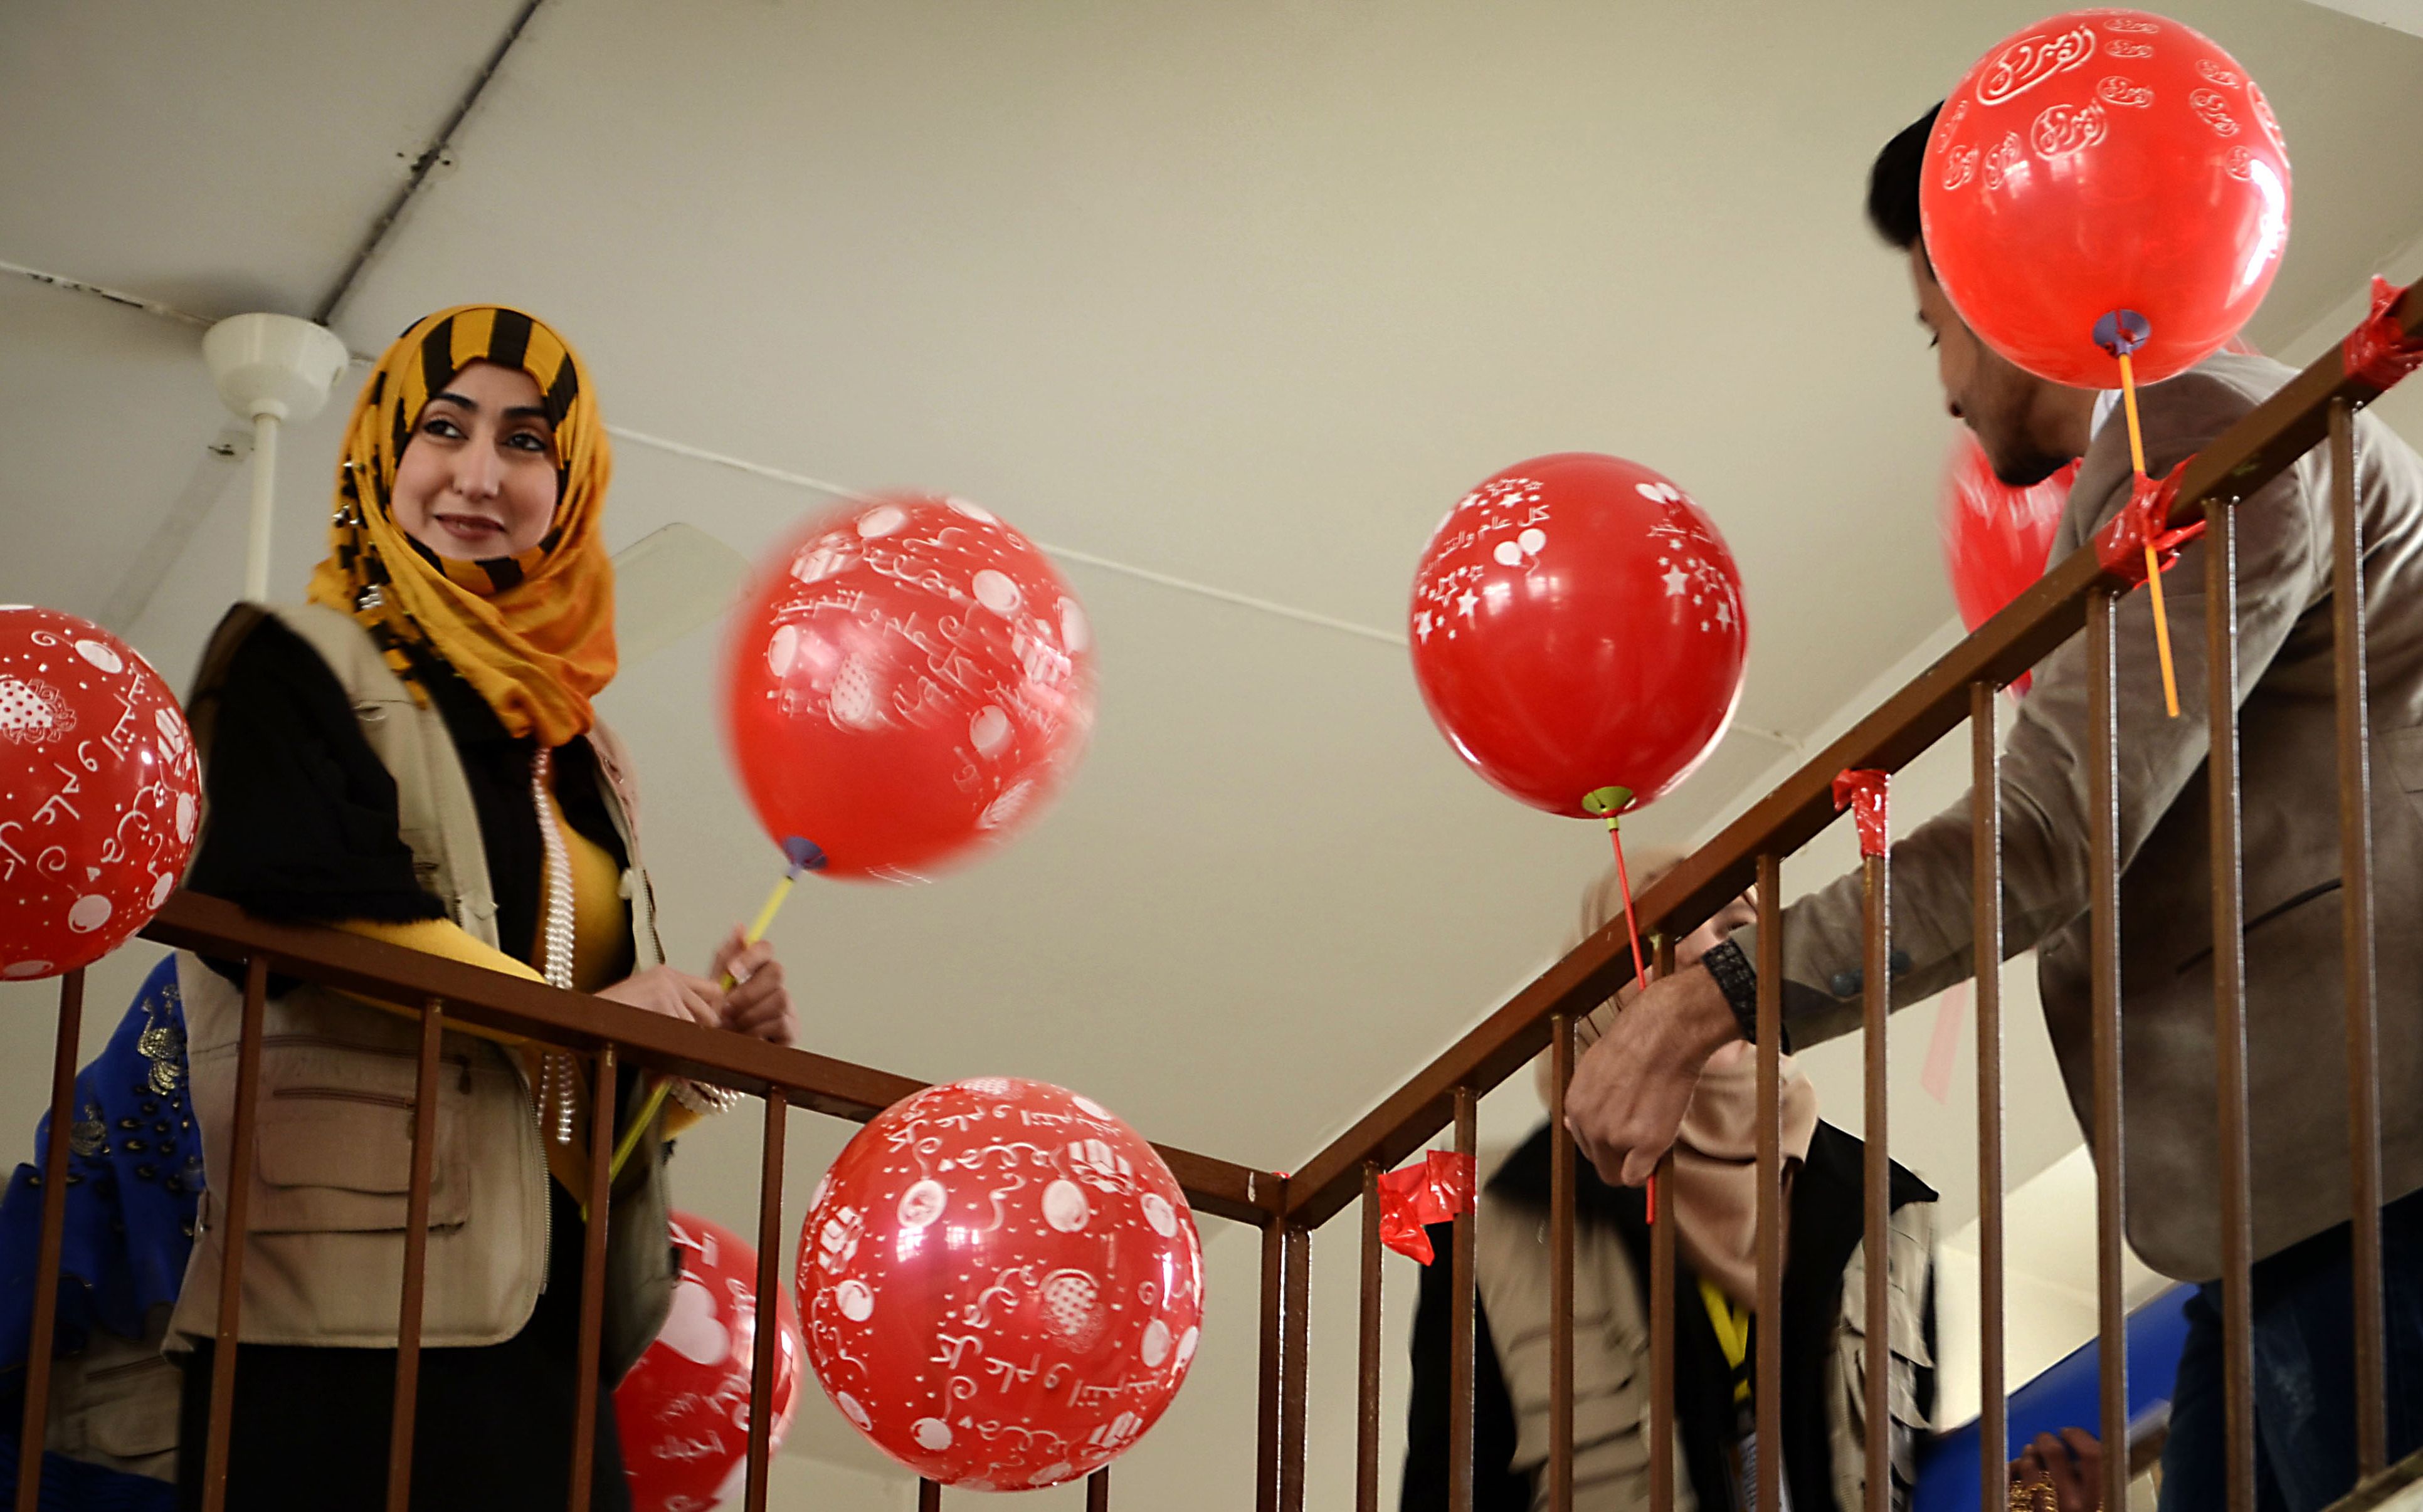 الاحتفال بعيد الحب فى مدرسة بالموصل مع توزيع البالونات  على التلاميذ